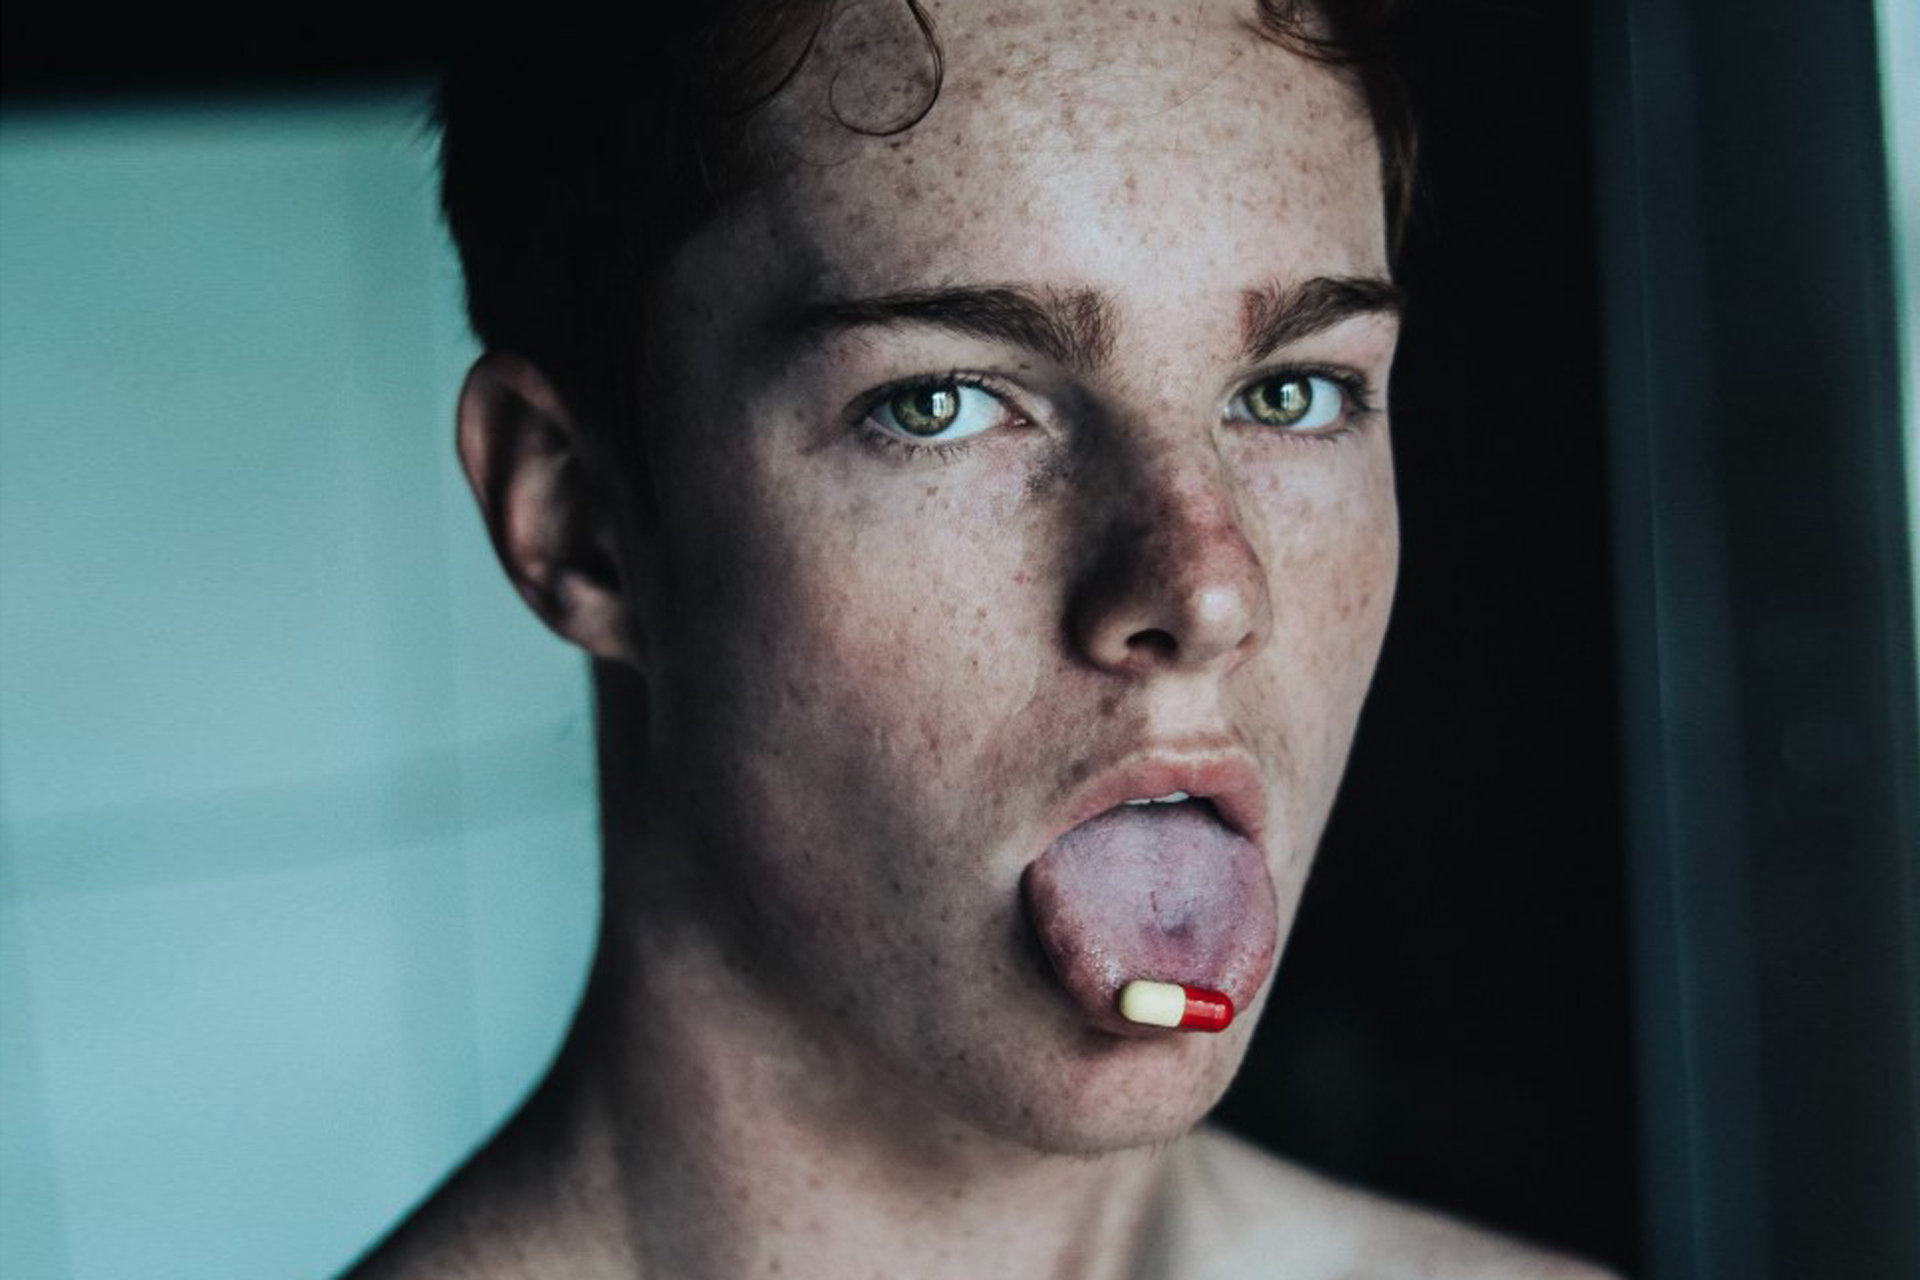 Mann hat eine Pille auf der Zunge. Bild: Unsplash